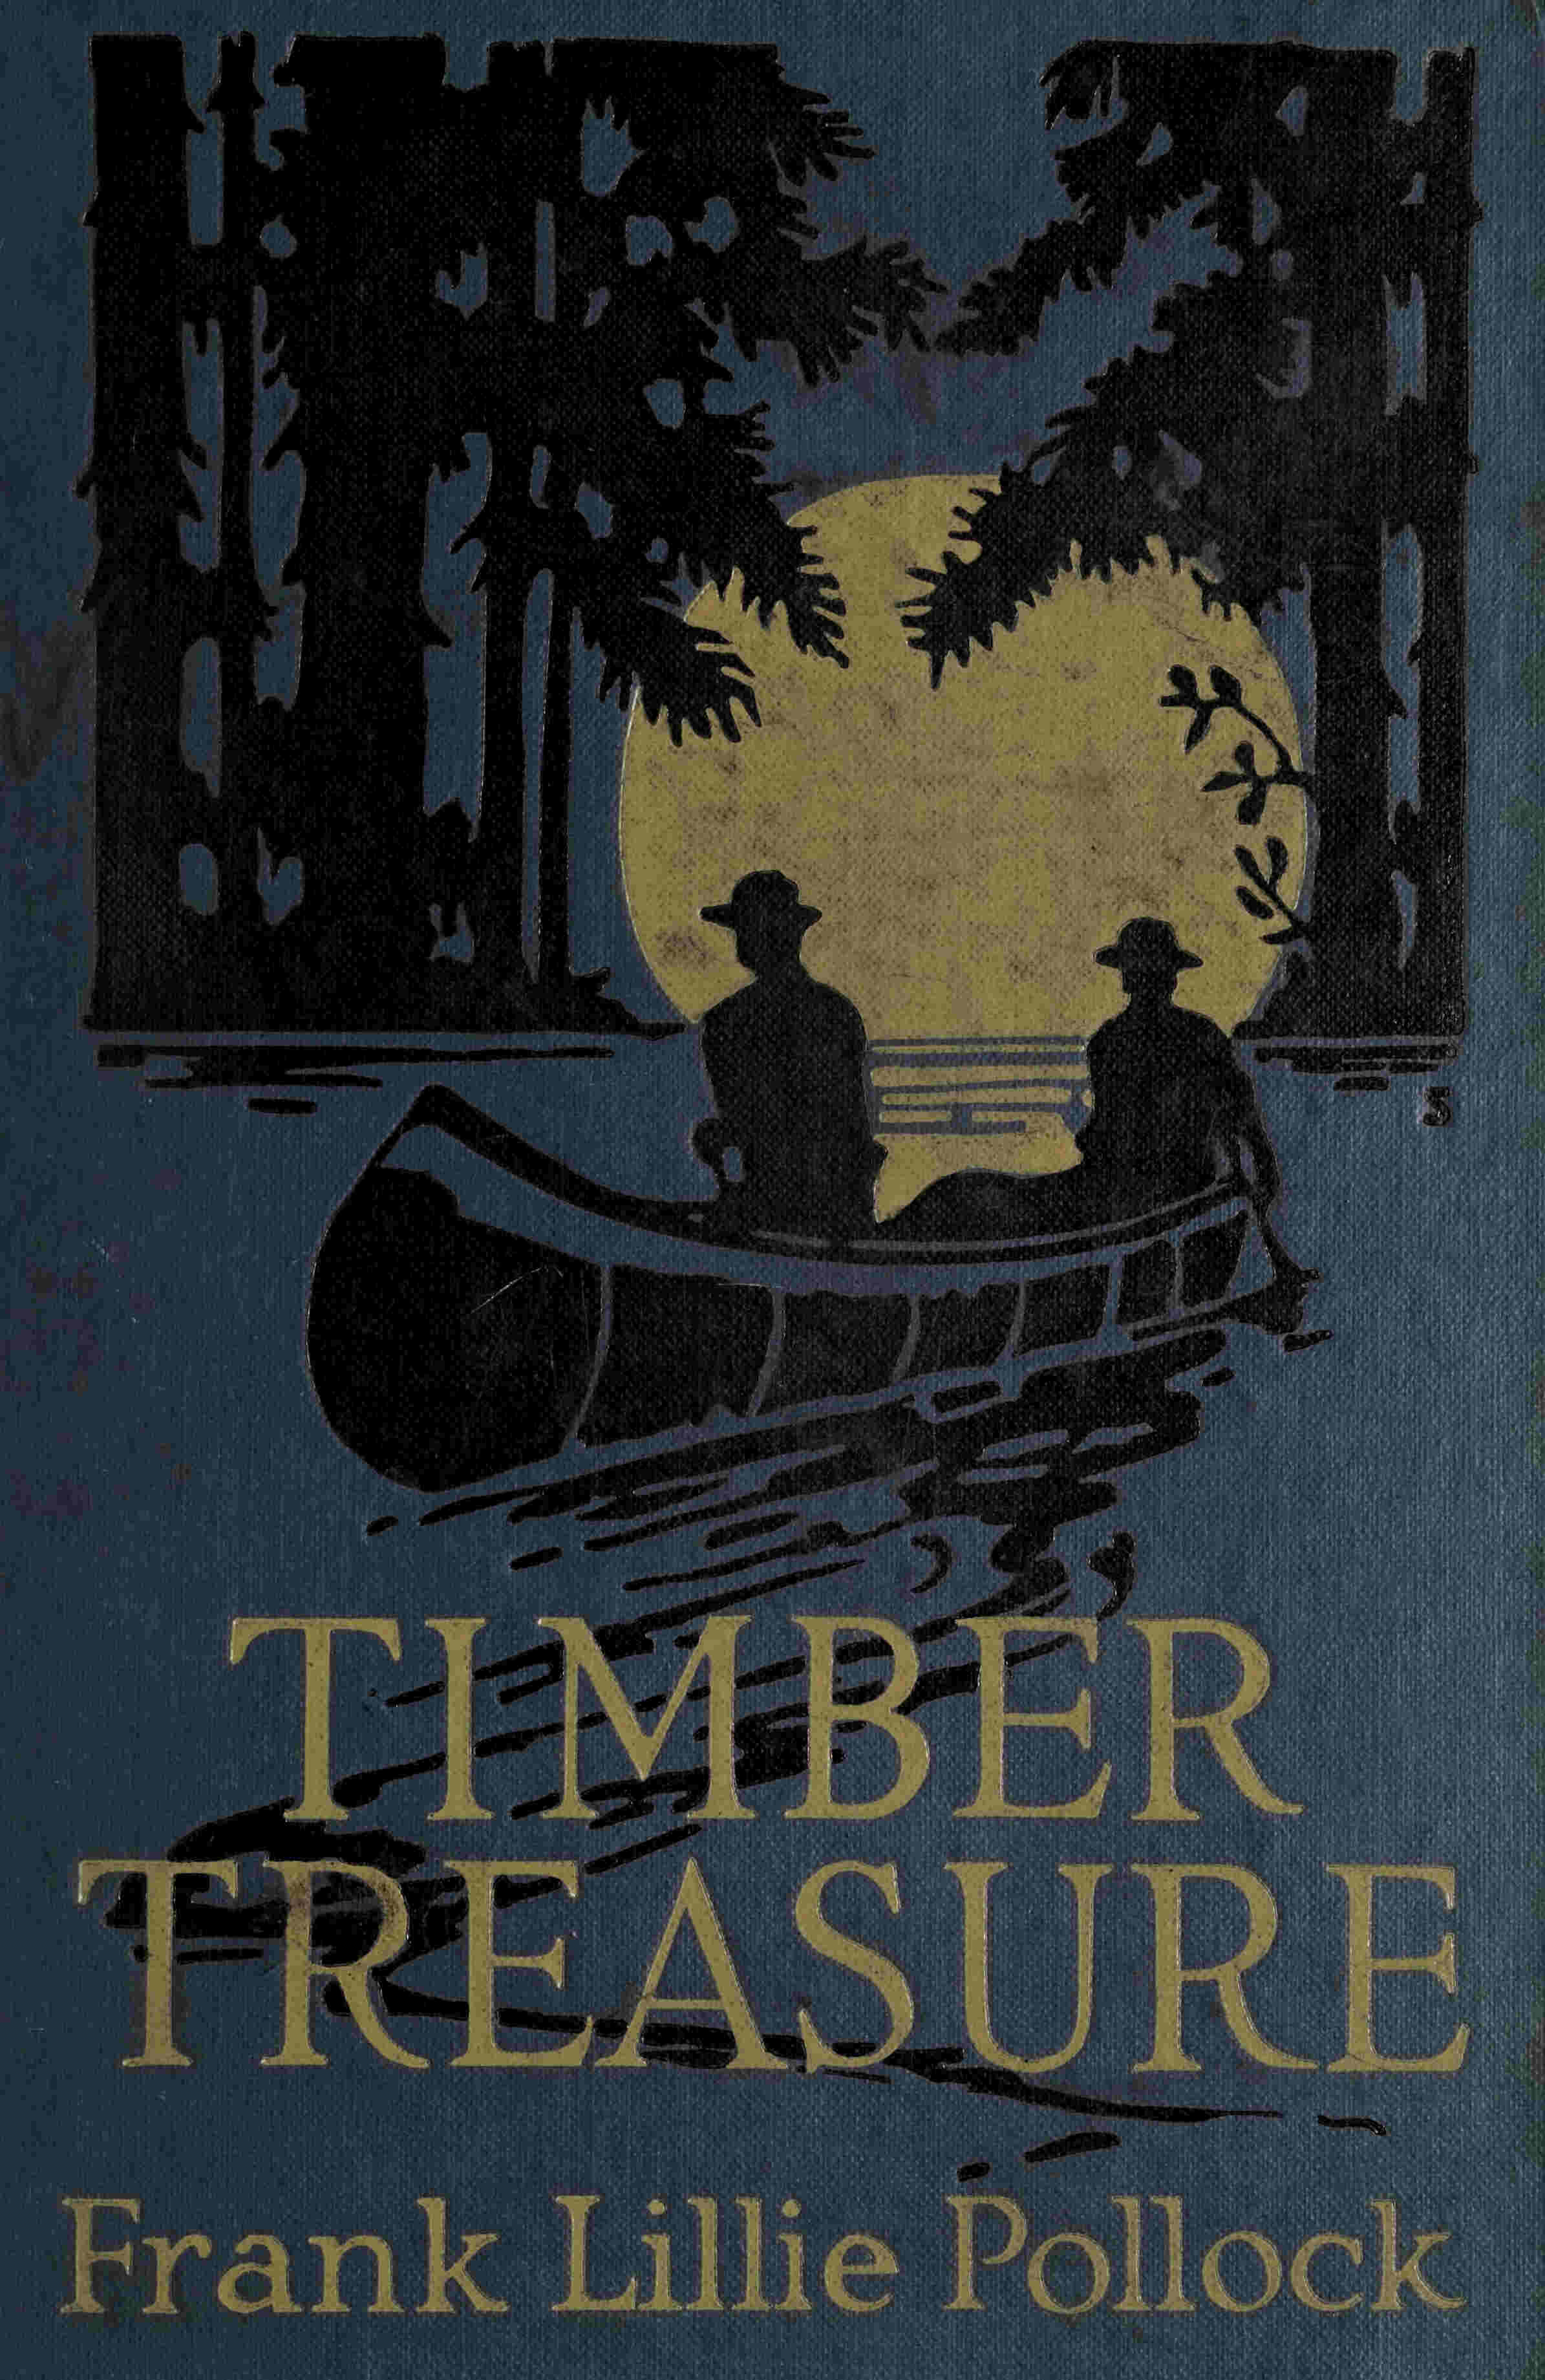 The Timber Treasure